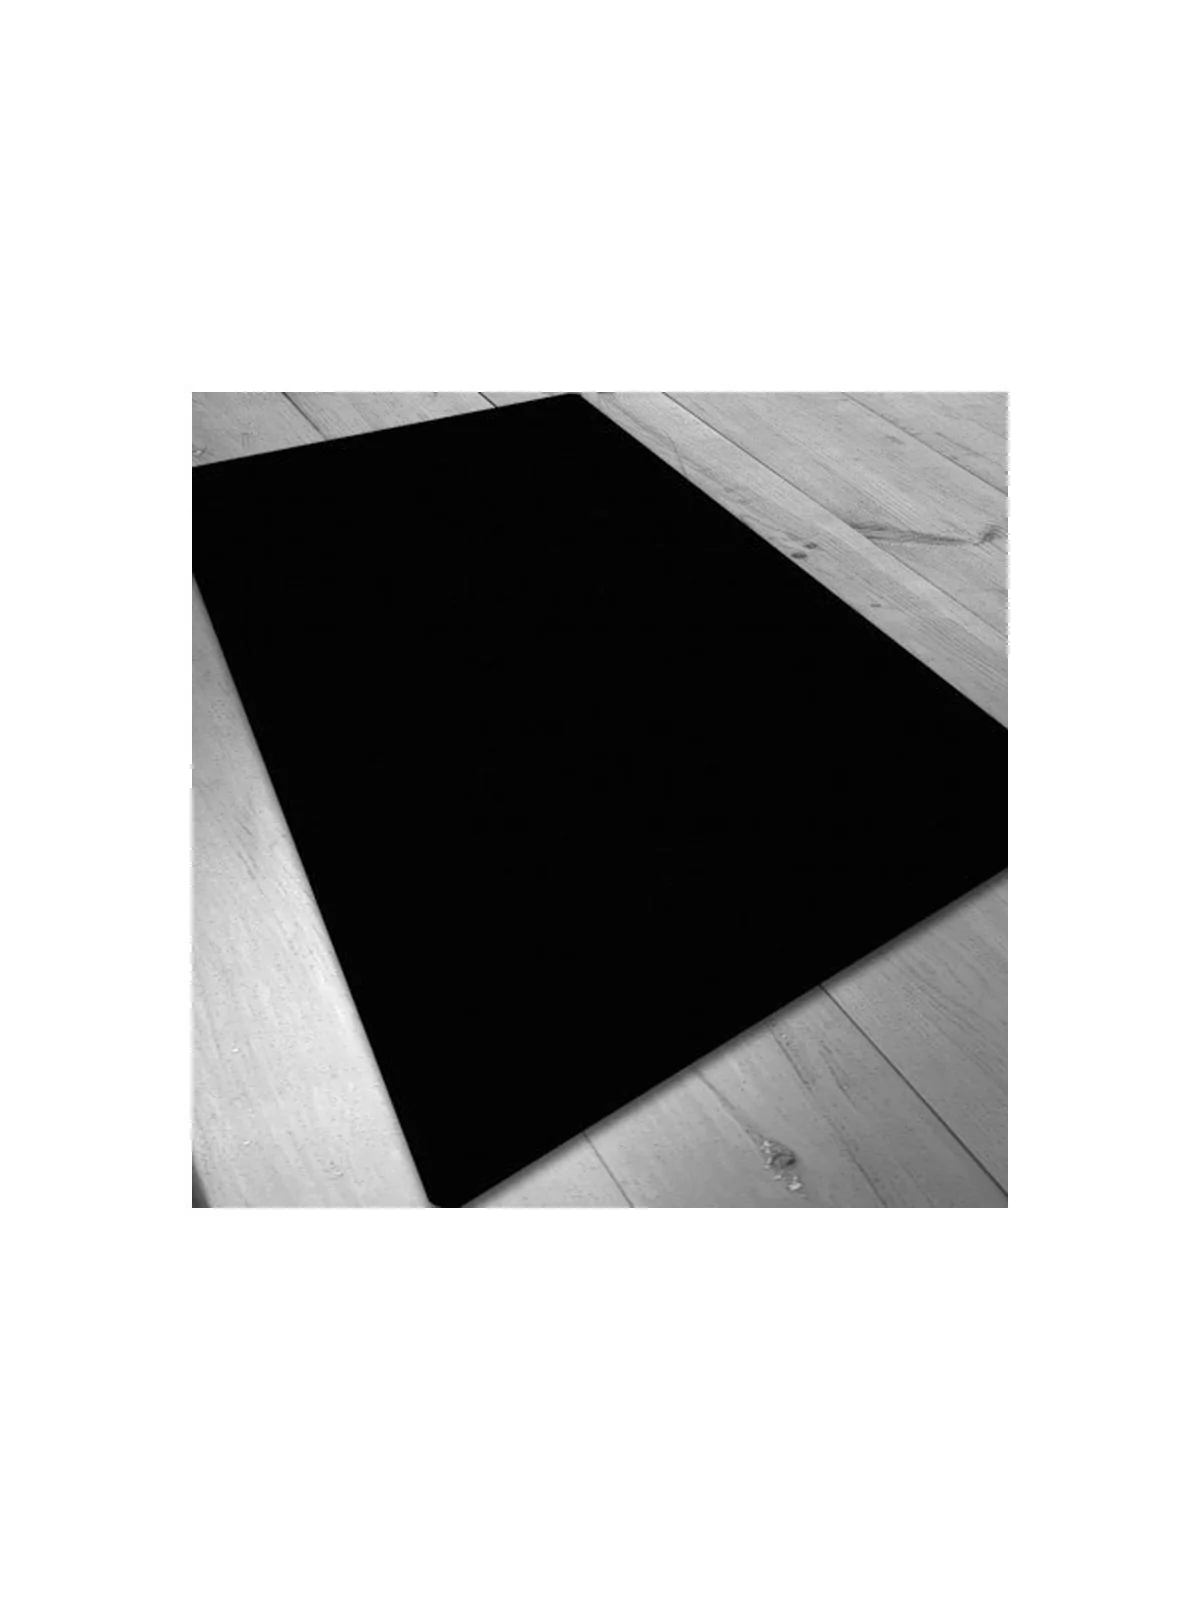 Comprar Tapete de Neopreno 140x80cm - Negro Liso barato al mejor preci